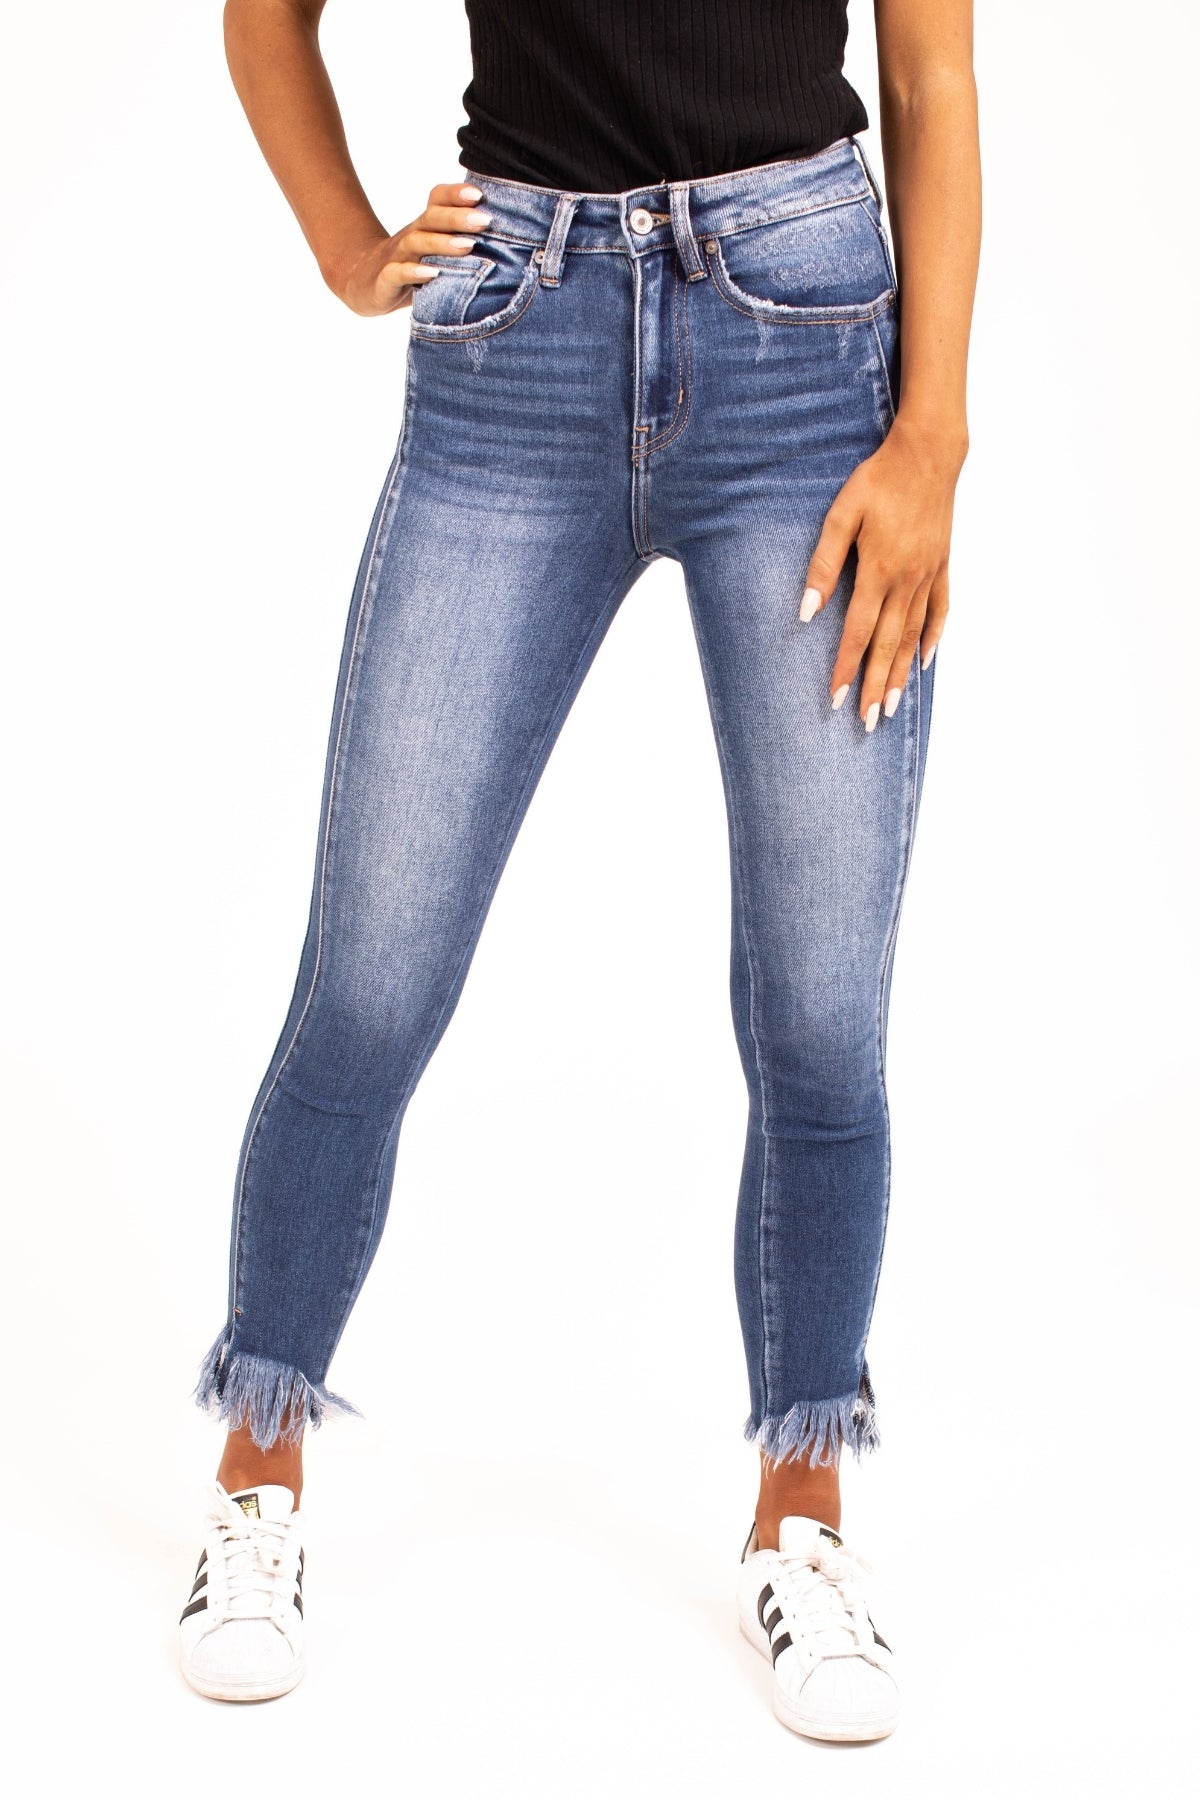 KanCan Denim Jeans with Frayed Hem